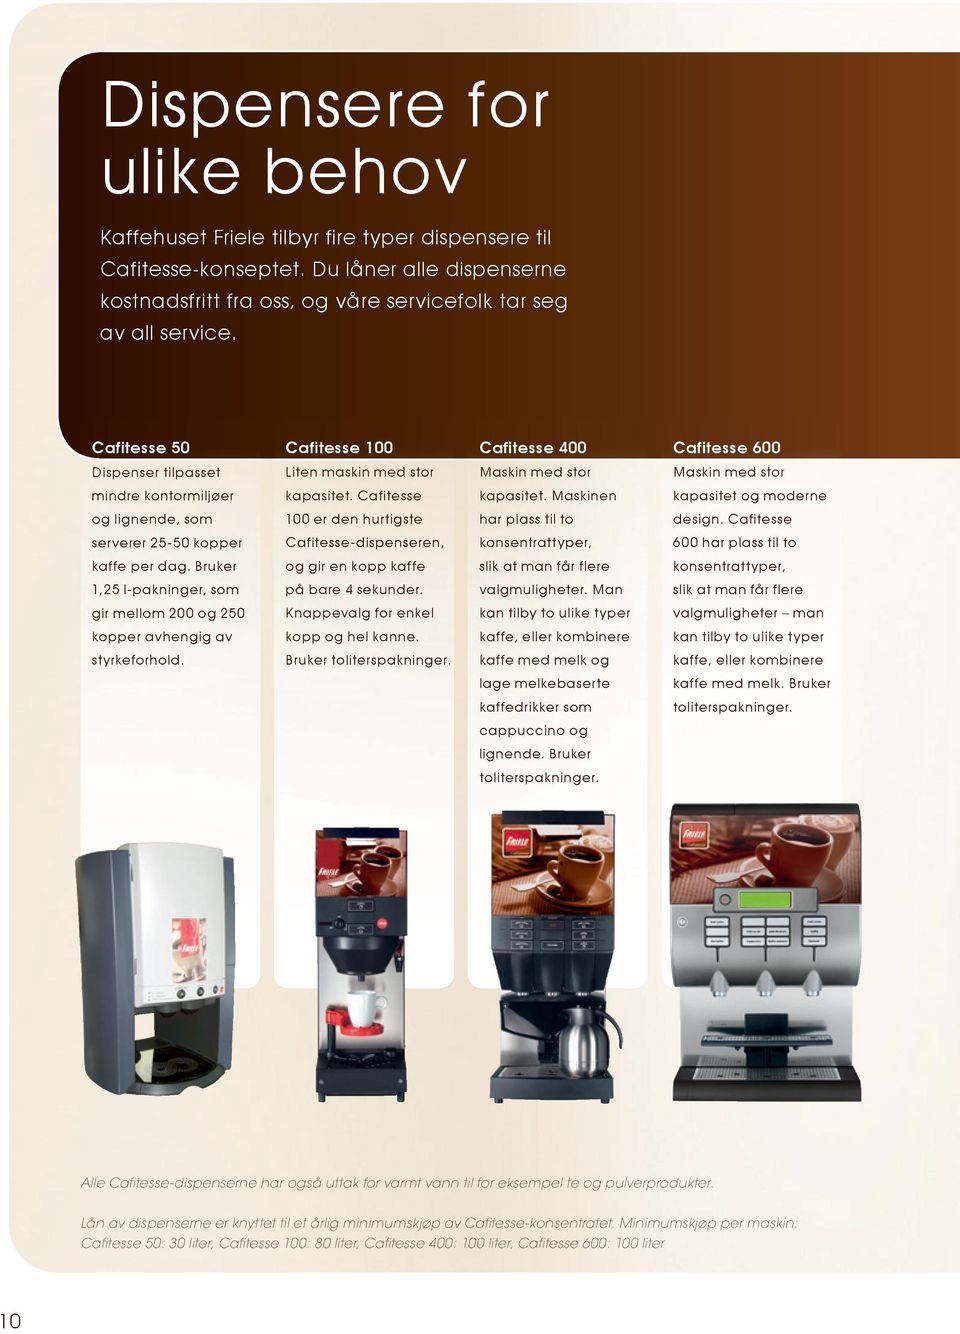 Maskinen kapasitet og moderne og lignende, som 100 er den hurtigste har plass til to design. Cafitesse serverer 25-50 kopper Cafitesse-dispenseren, konsentrattyper, 600 har plass til to kaffe per dag.